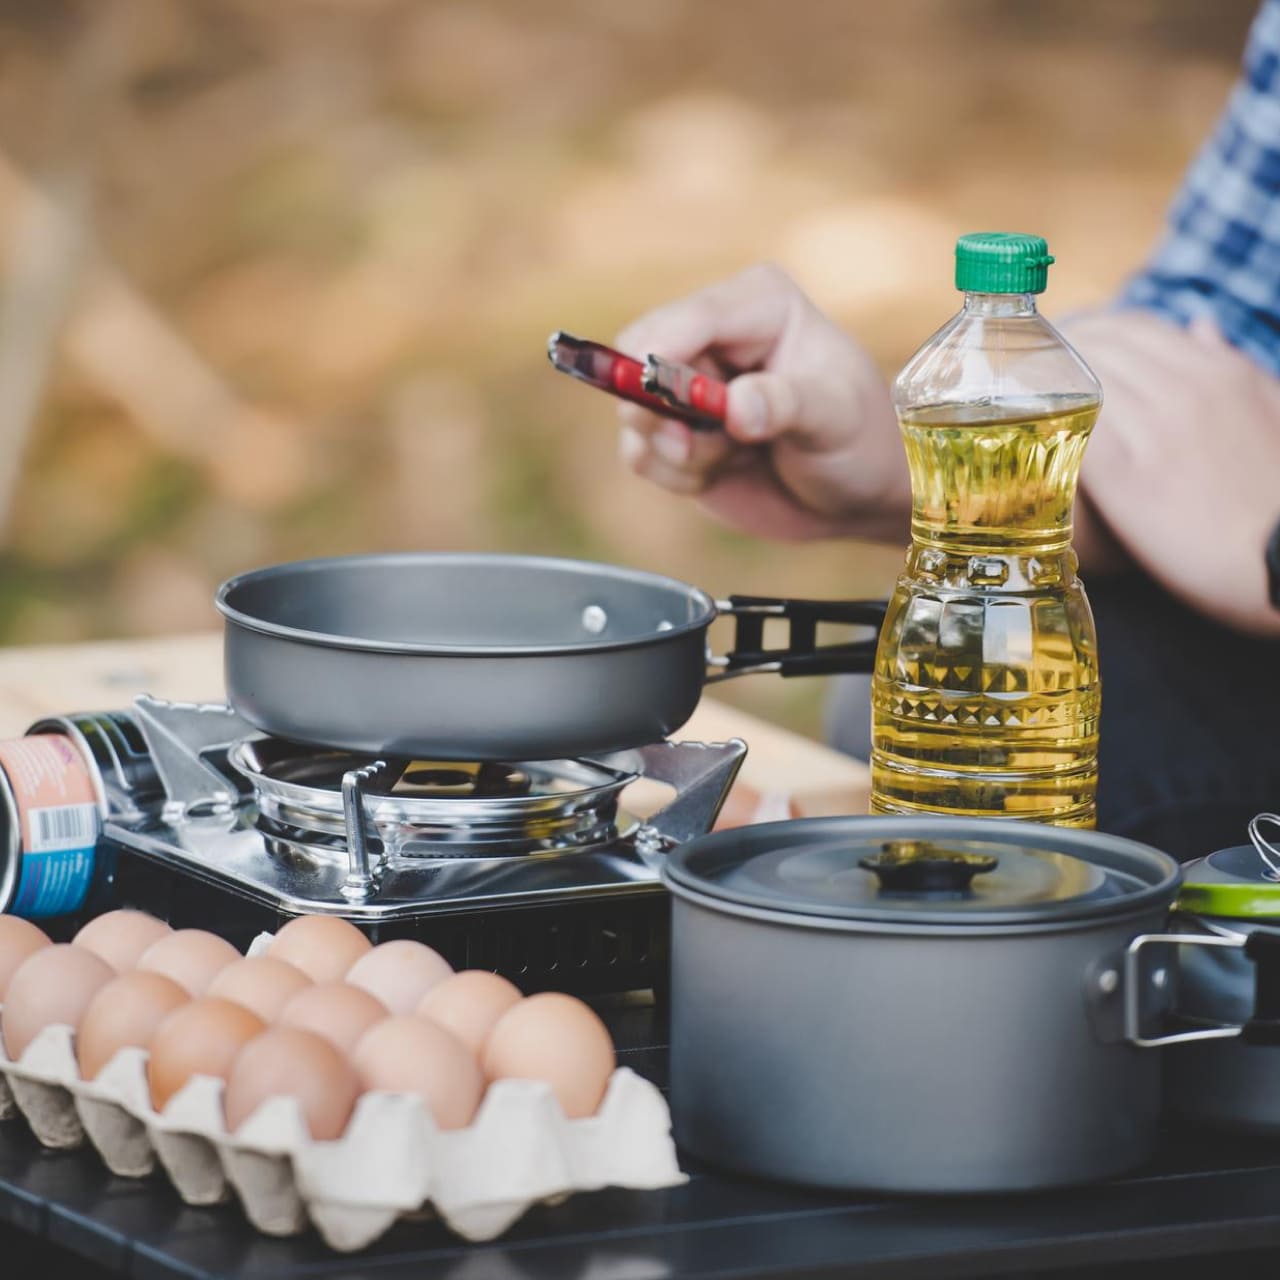 露營裝備清單第 4 項：露營廚具與飲食